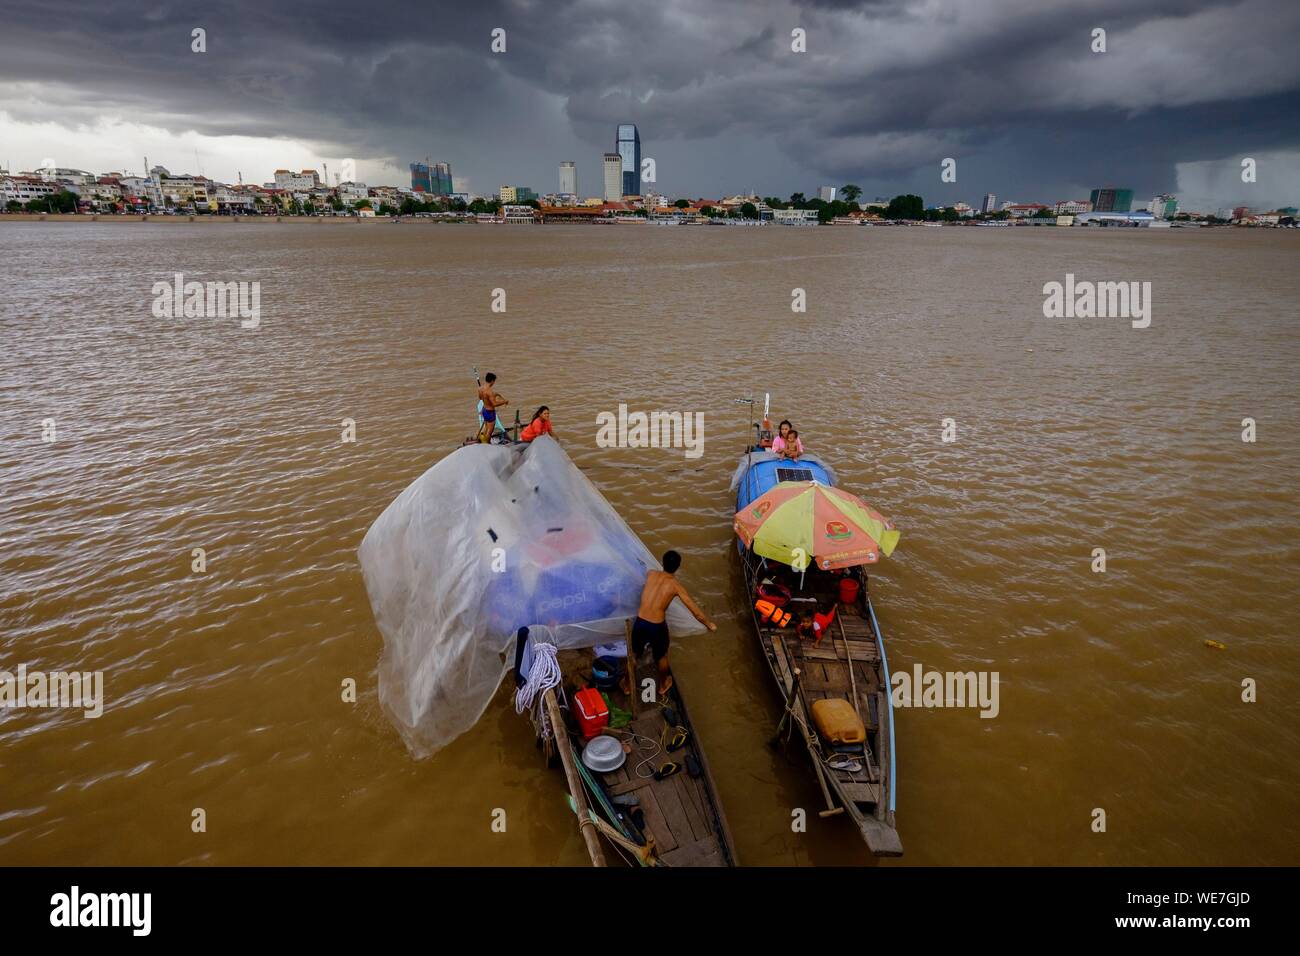 Camboya, Phnom Penh, grupo étnico cham personas viviendo en sus barcos Foto de stock